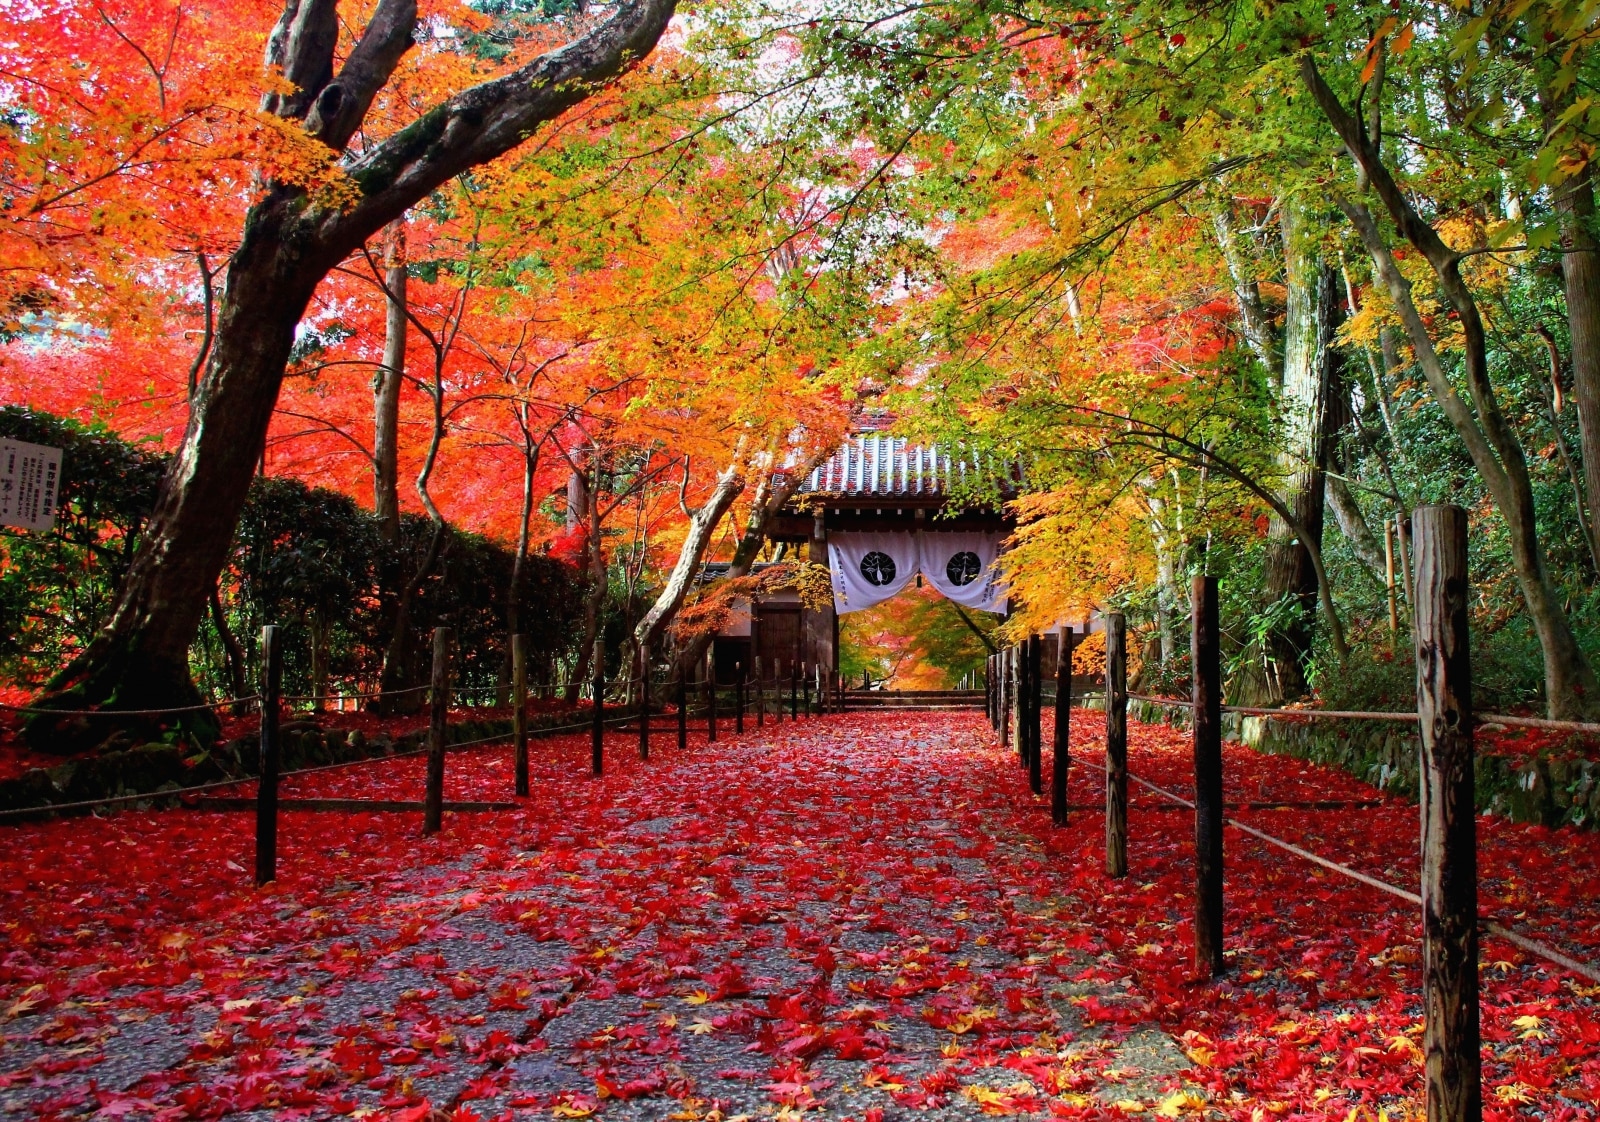 京都 時期をずらして 散り始め の景色を楽しむ 穴場紅葉スポット10選 Skyticket 観光ガイド